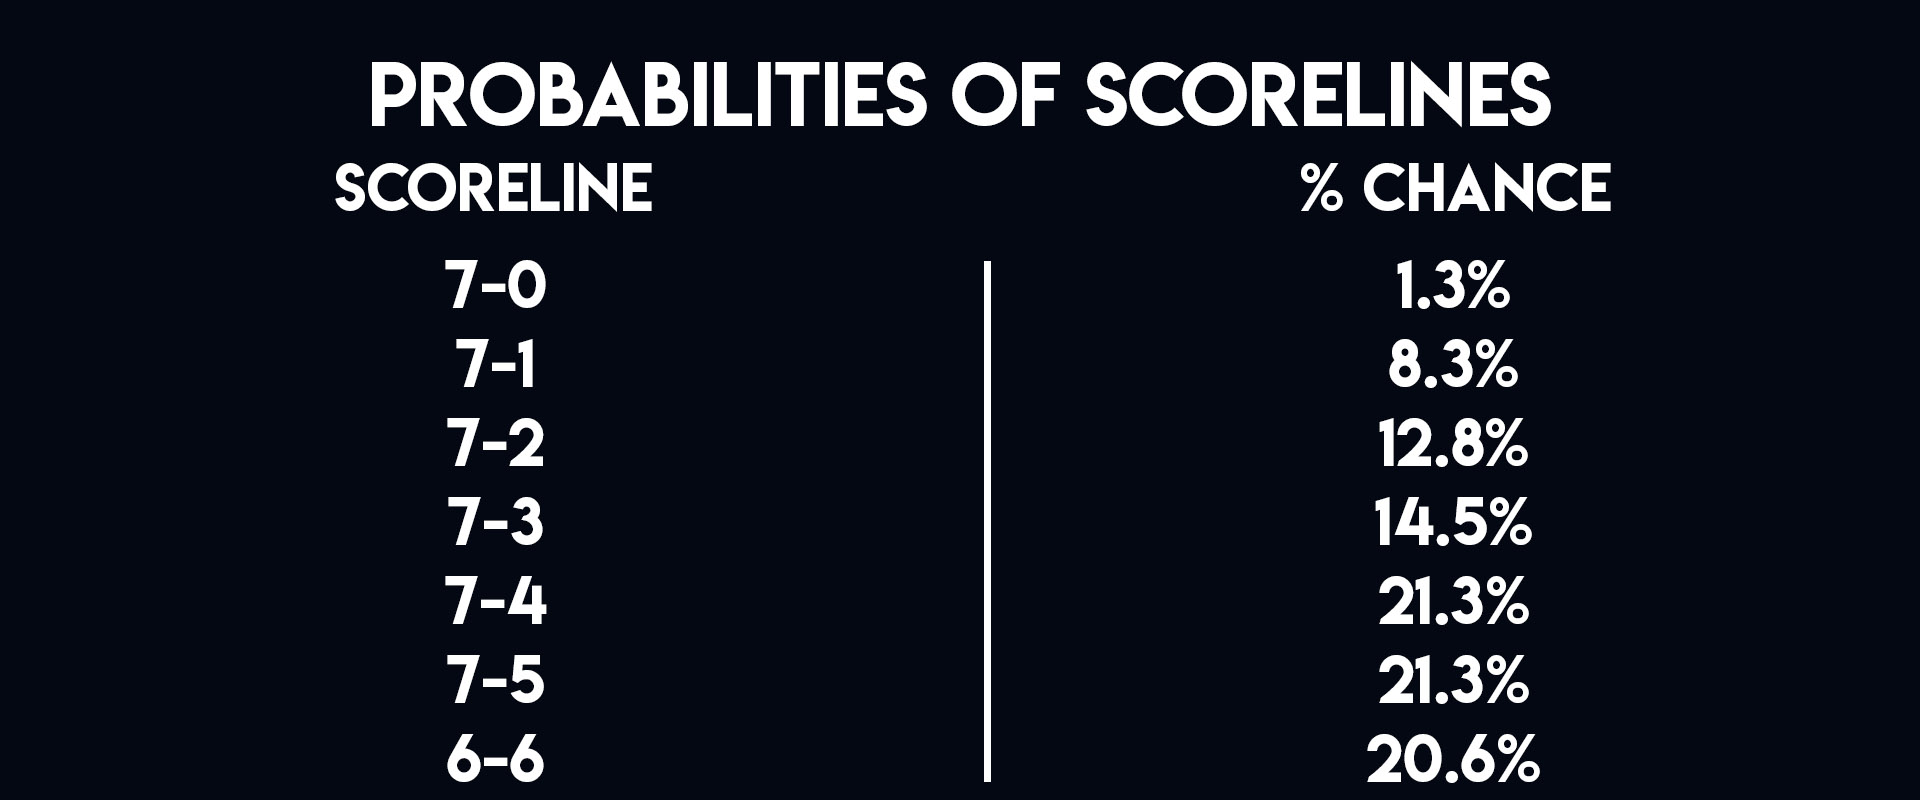 Unibet Premier League scoreline probabilities (PDC)